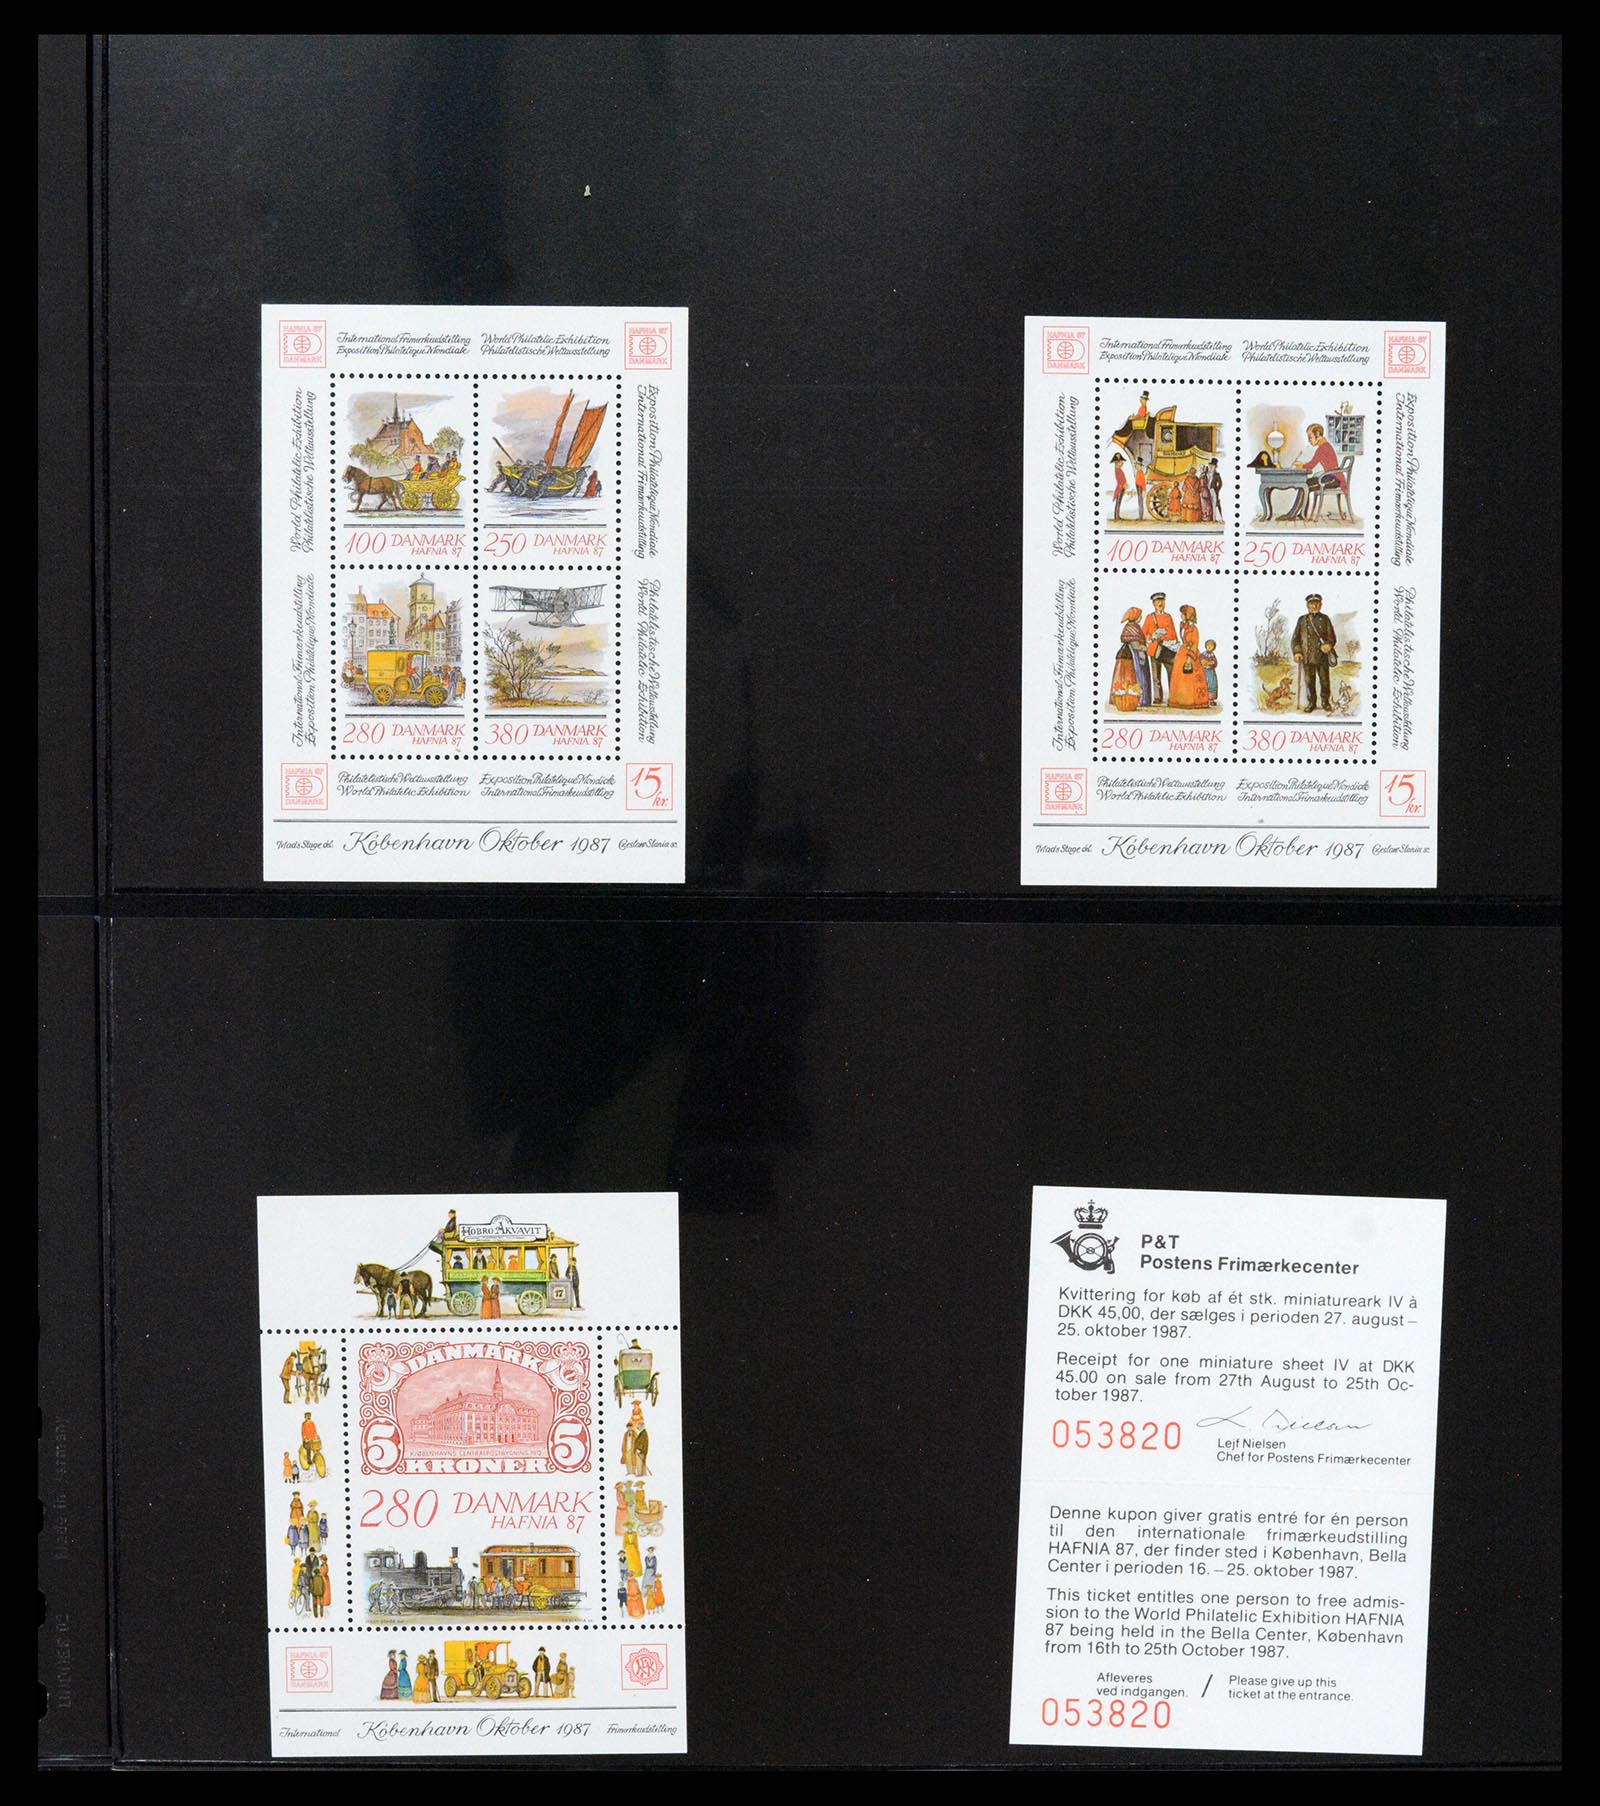 37345 027 - Stamp collection 37345 European countries souvenir sheets.